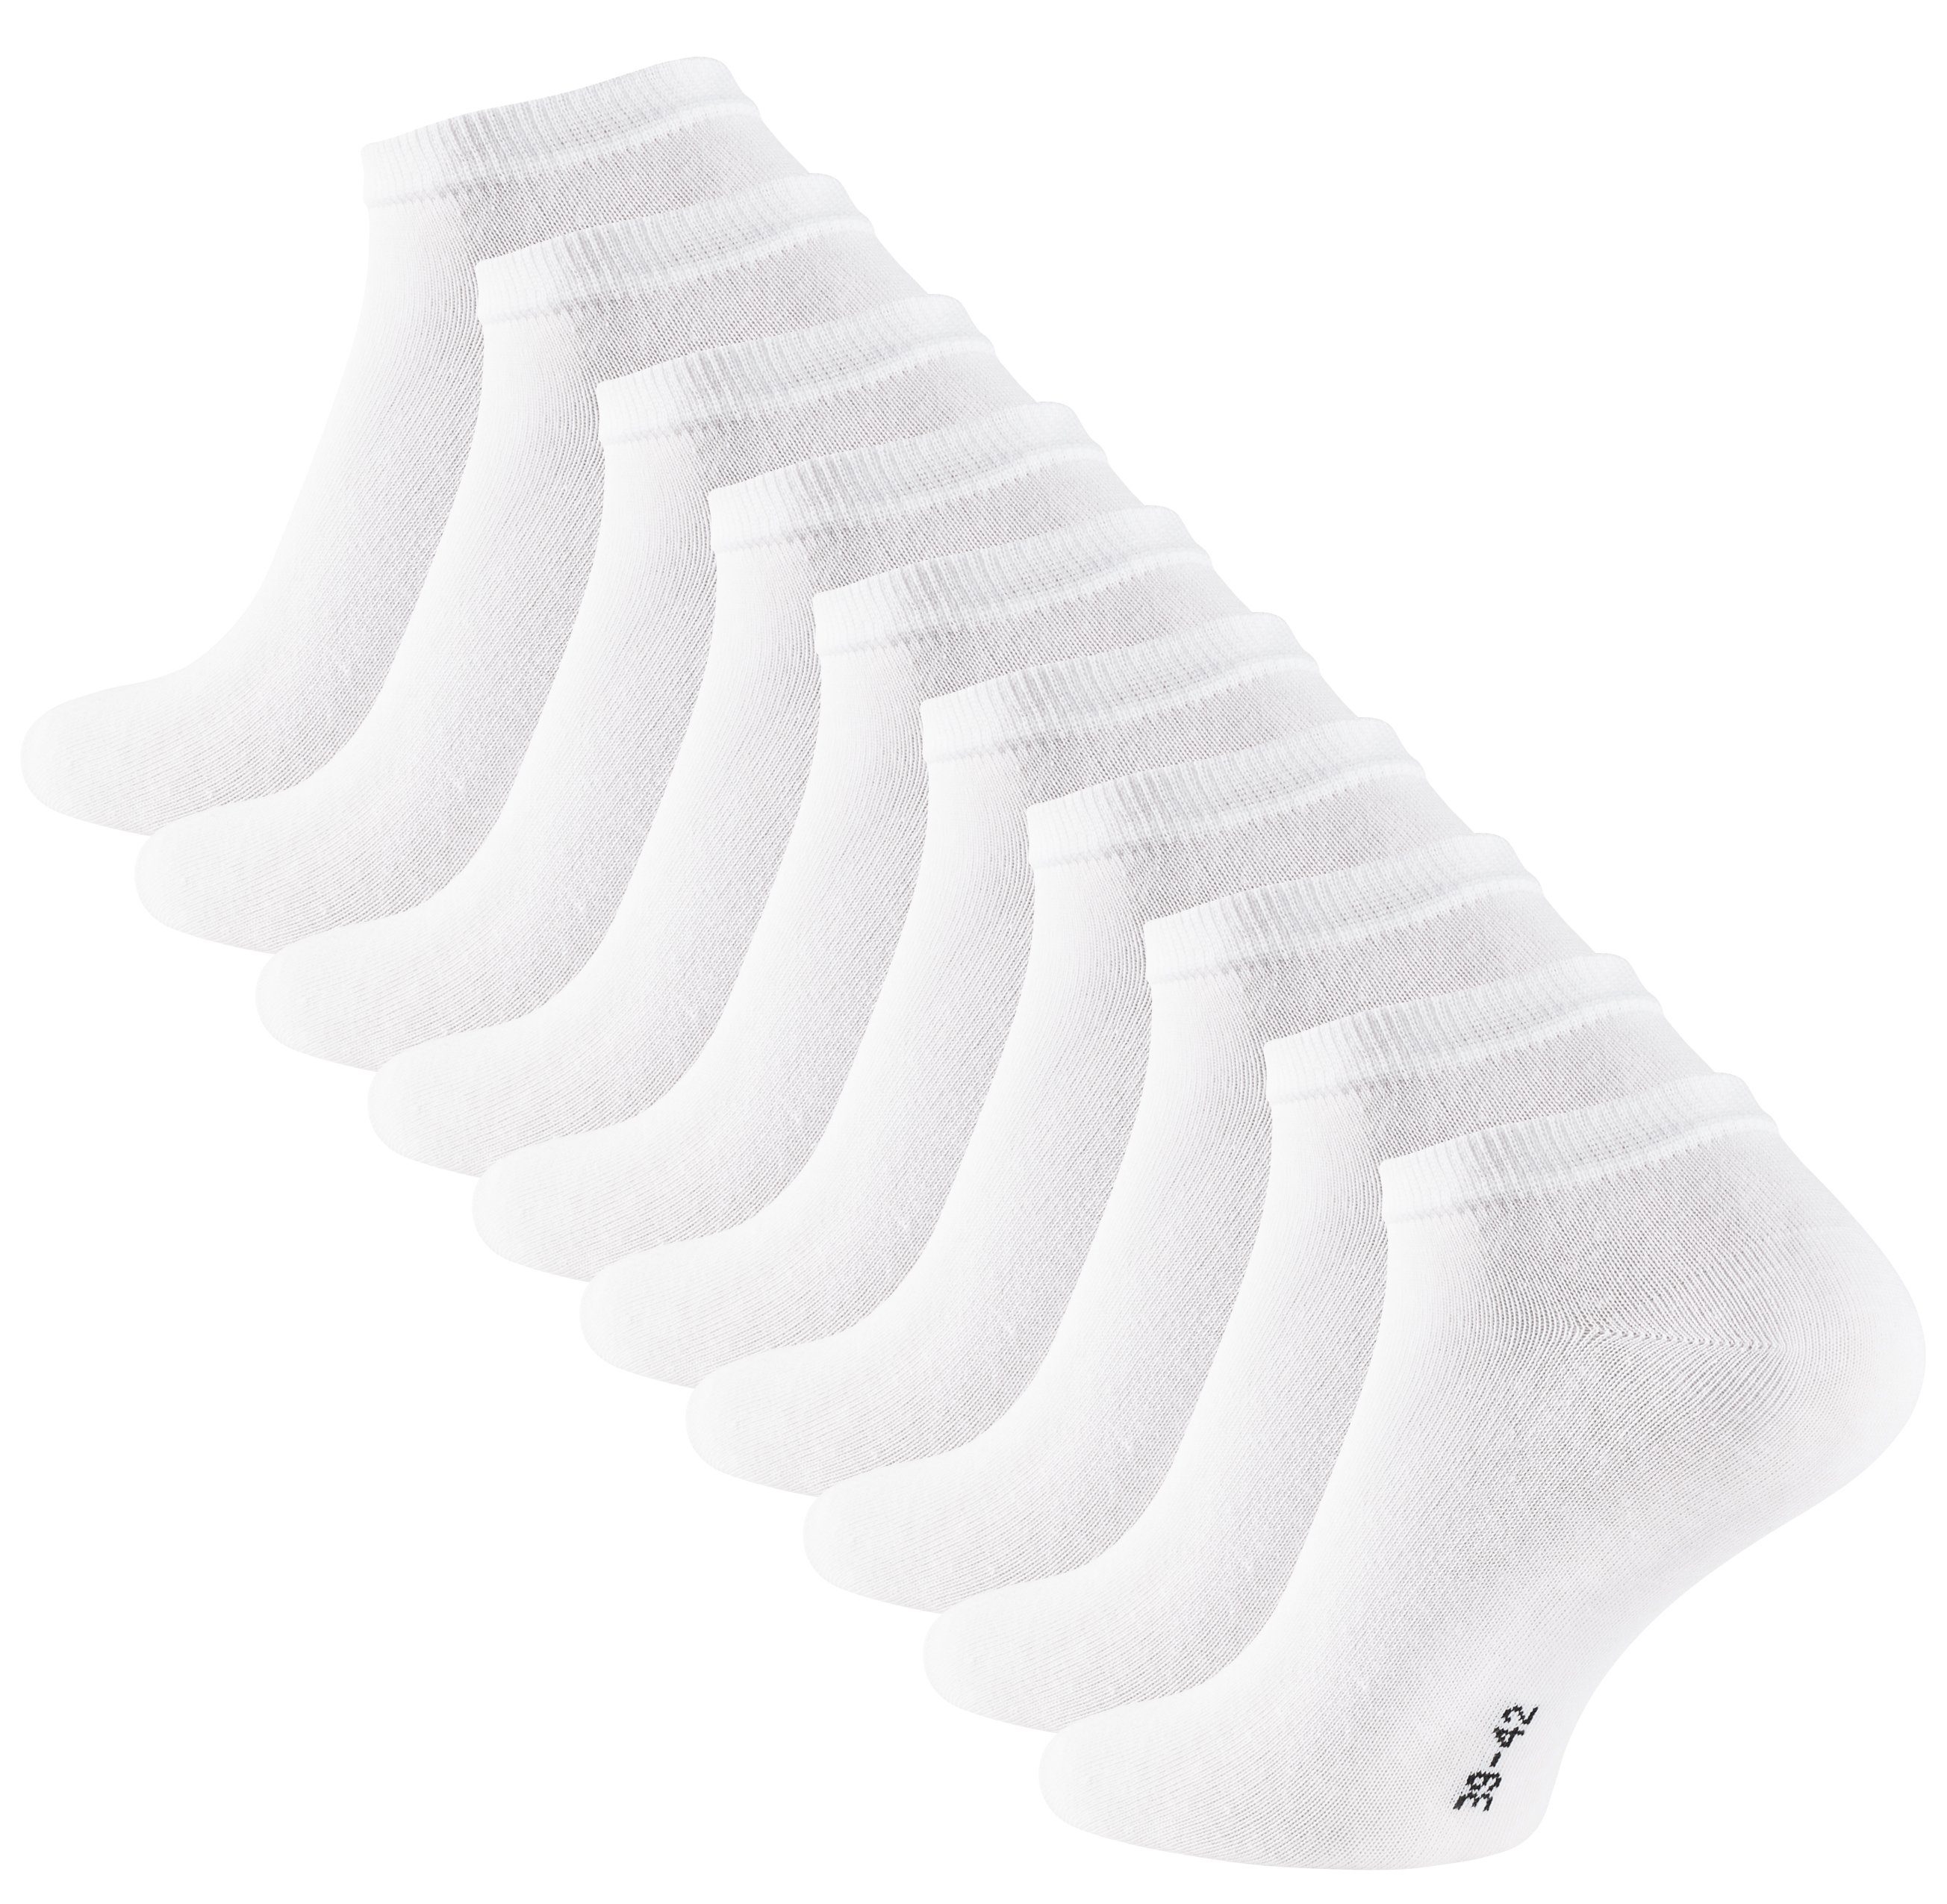 Weiss Sneakersocken Baumwollqualität (10-Paar) Cotton in Prime® angenehmer